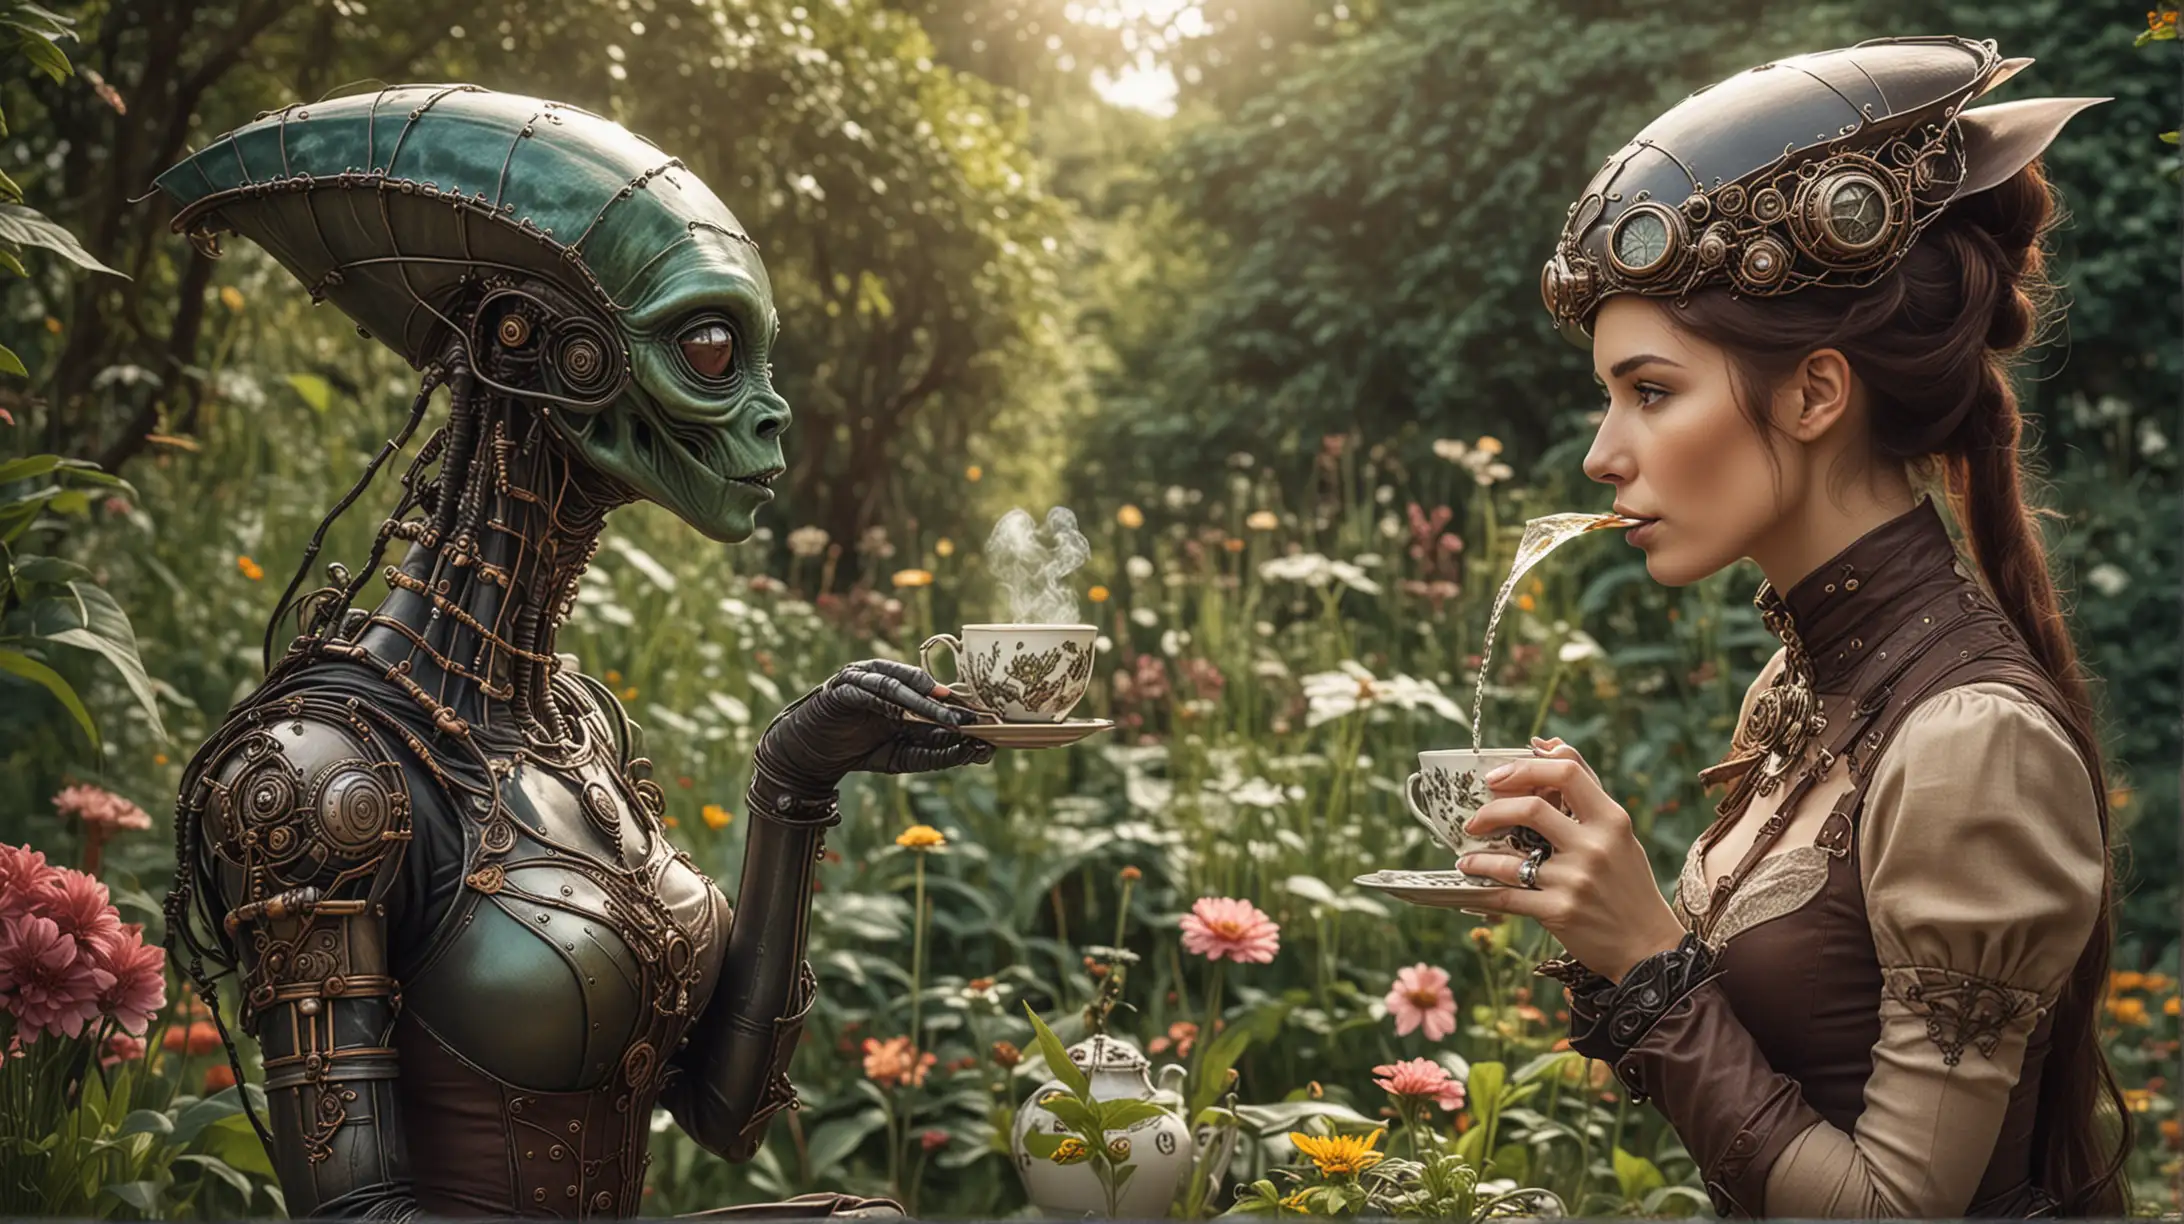 Steampunk Woman Drinking Tea with Alien in Enchanted Garden